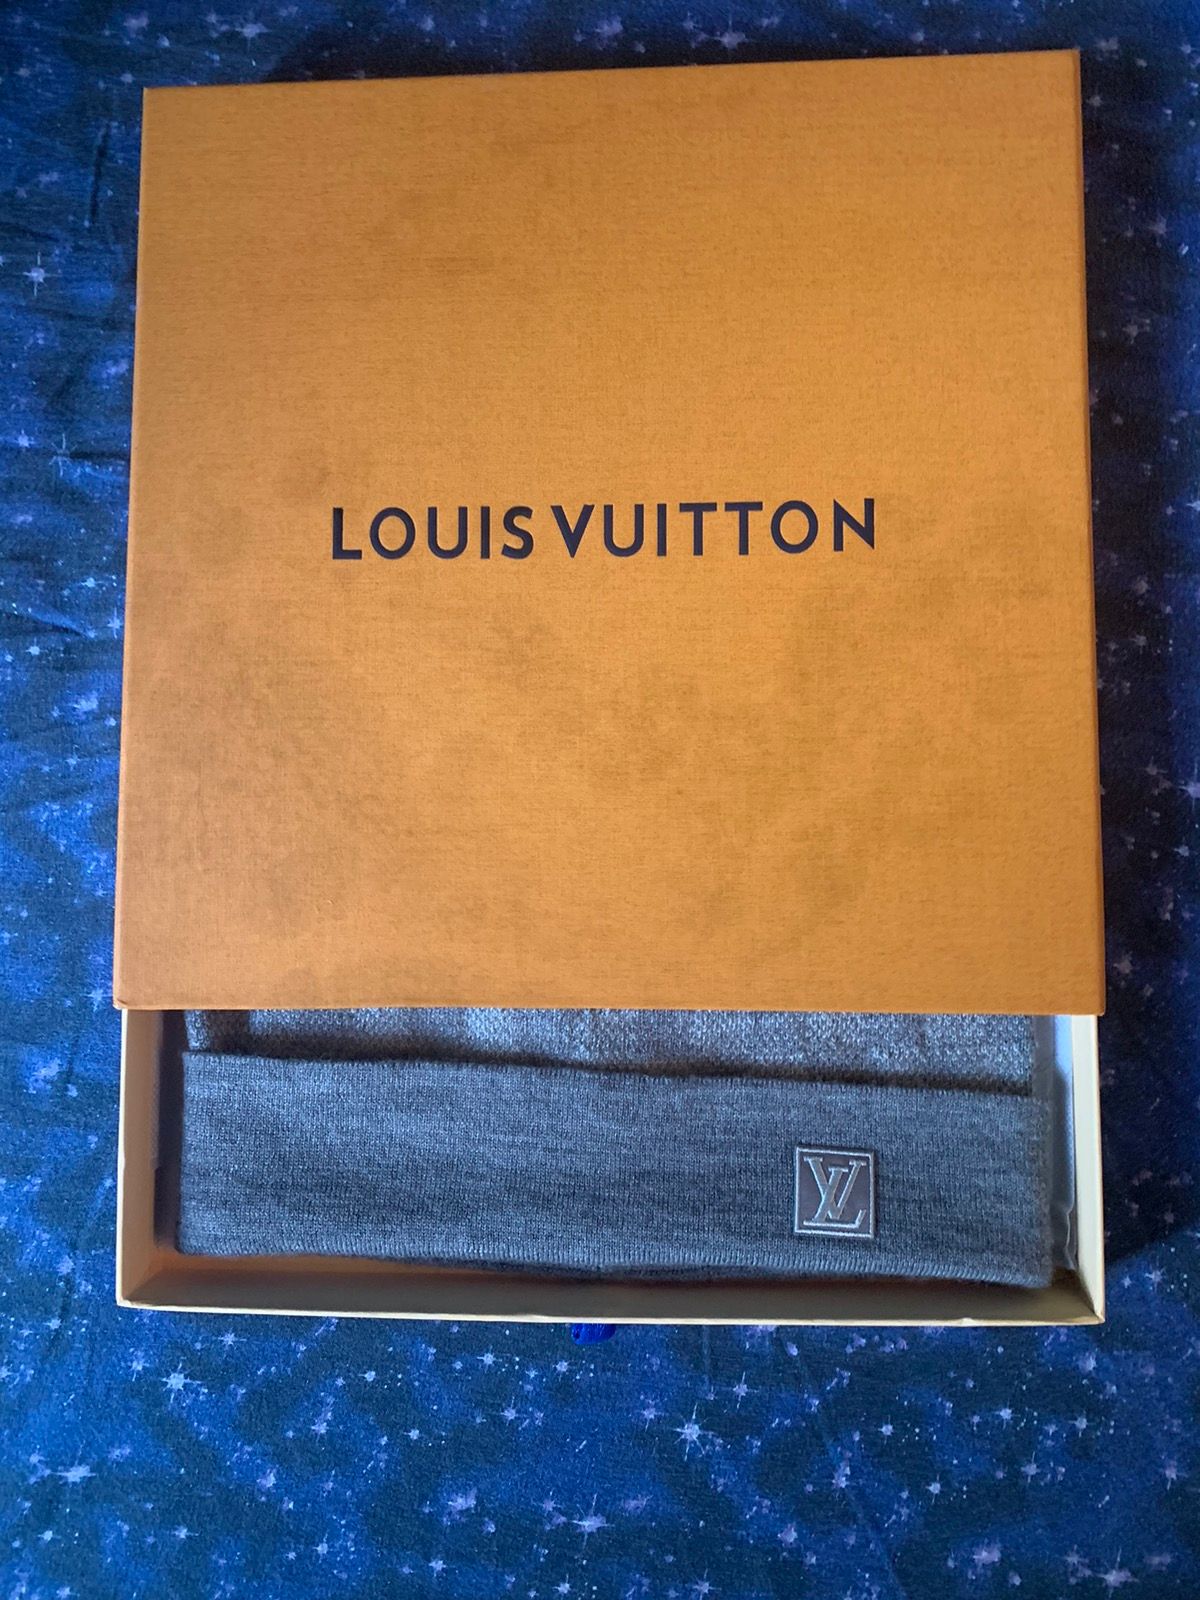 Louis Vuitton Beanie Gently Worn One Size Grey/